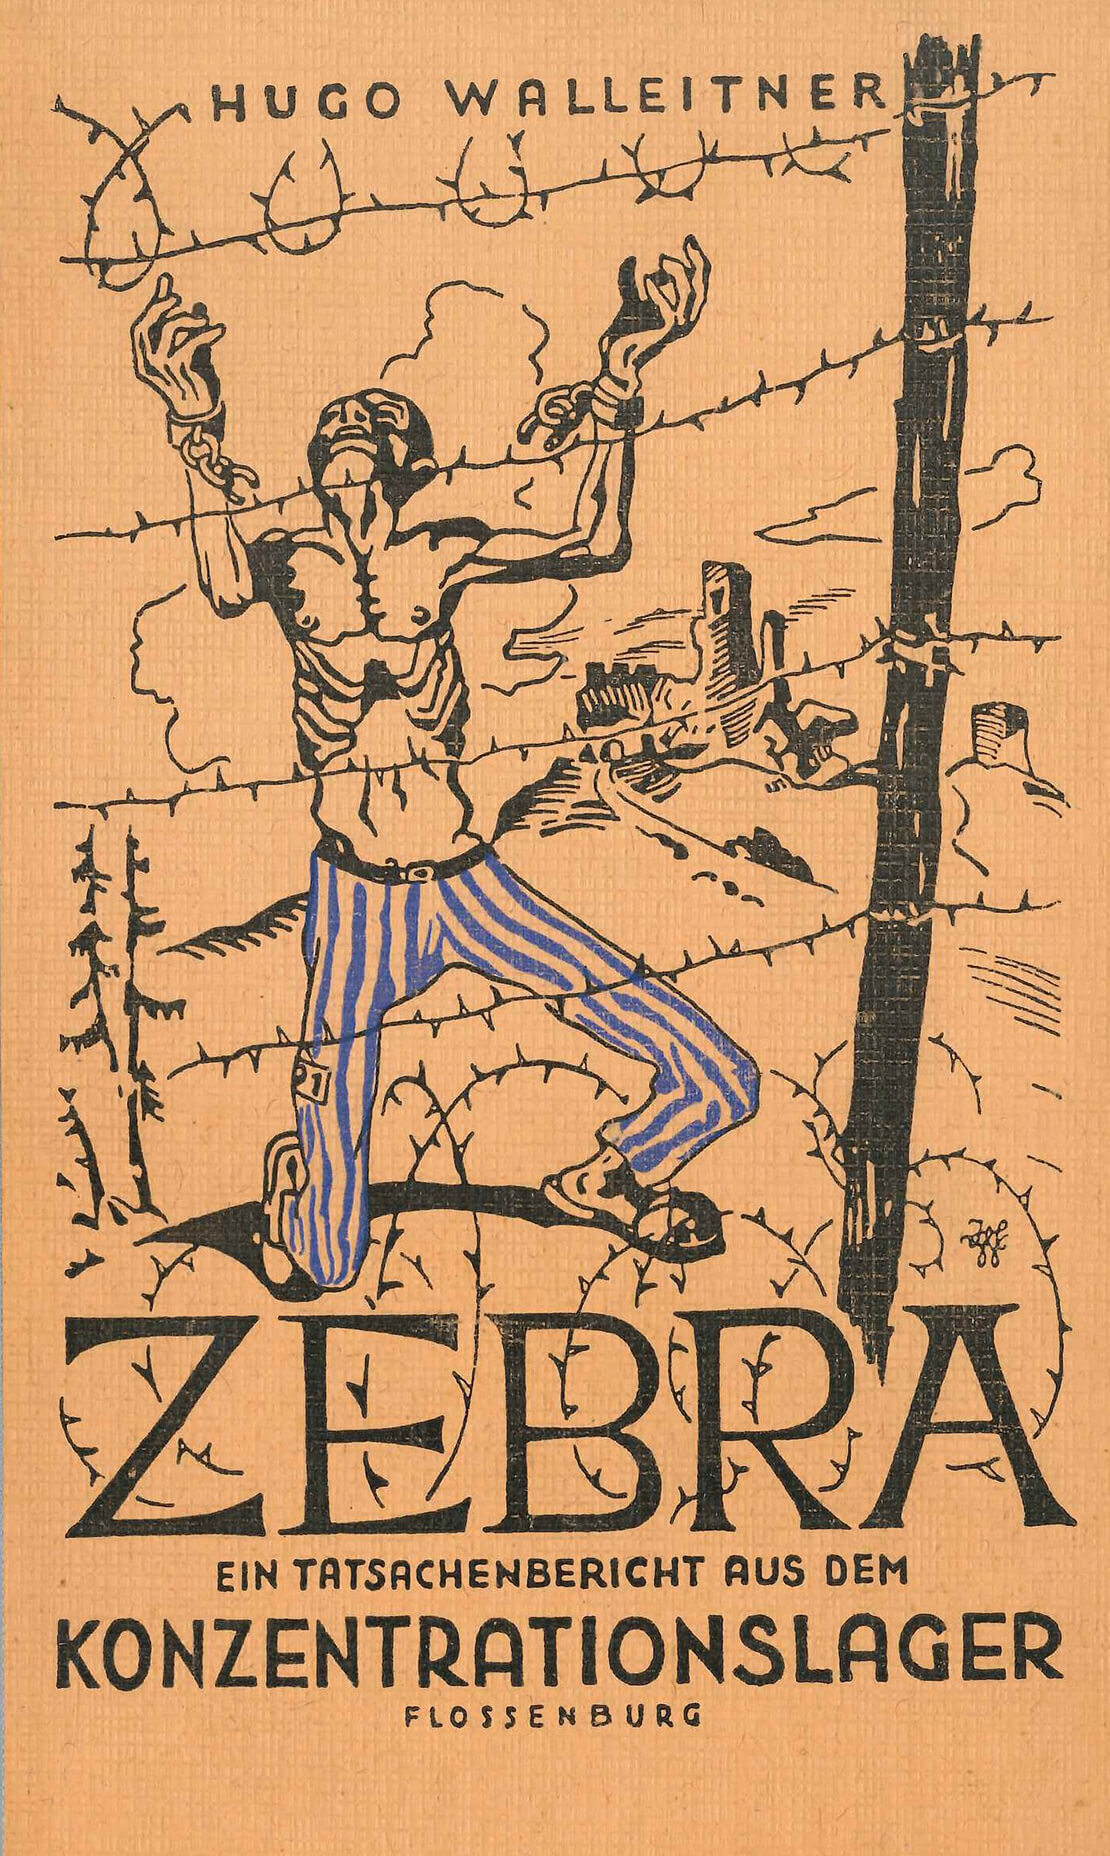 „ZEBRA – Ein Tatsachenbericht aus dem Konzentrationslager Flossenbürg“. Selbstverlag, Bad Ischl, ohne Jahresangabe (vermutlich 1947), QWIEN - Zentrum für queere Geschichte 